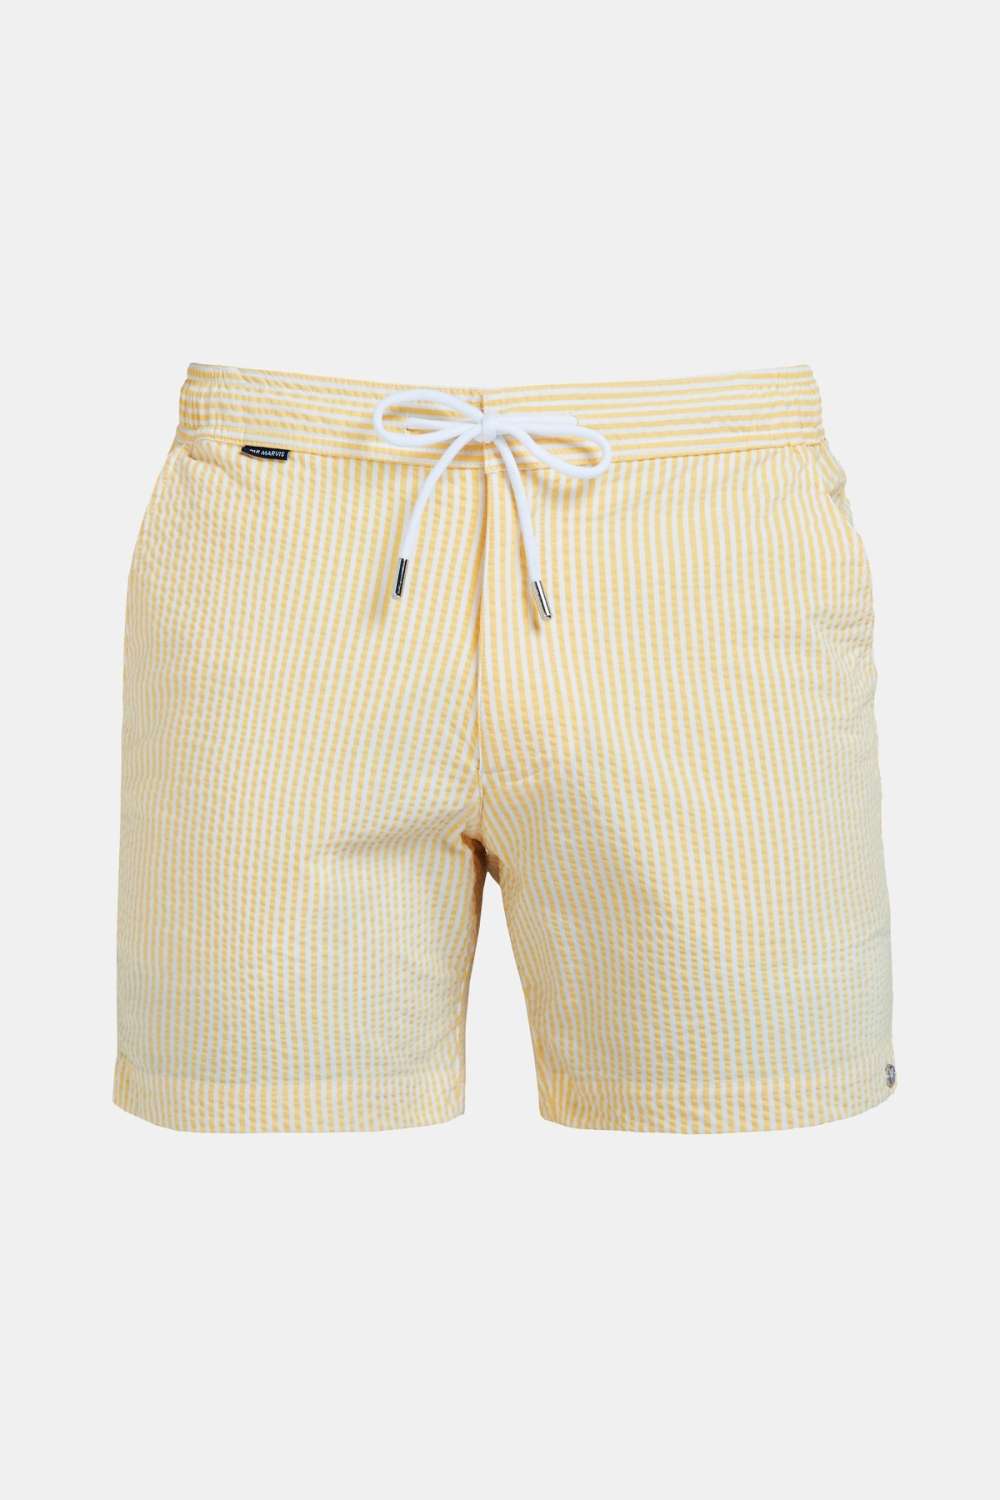 Stan Stripe Seersucker Swim Shorts in Mustard Yellow/Light Ivory - Eastwood  Ave. Menswear